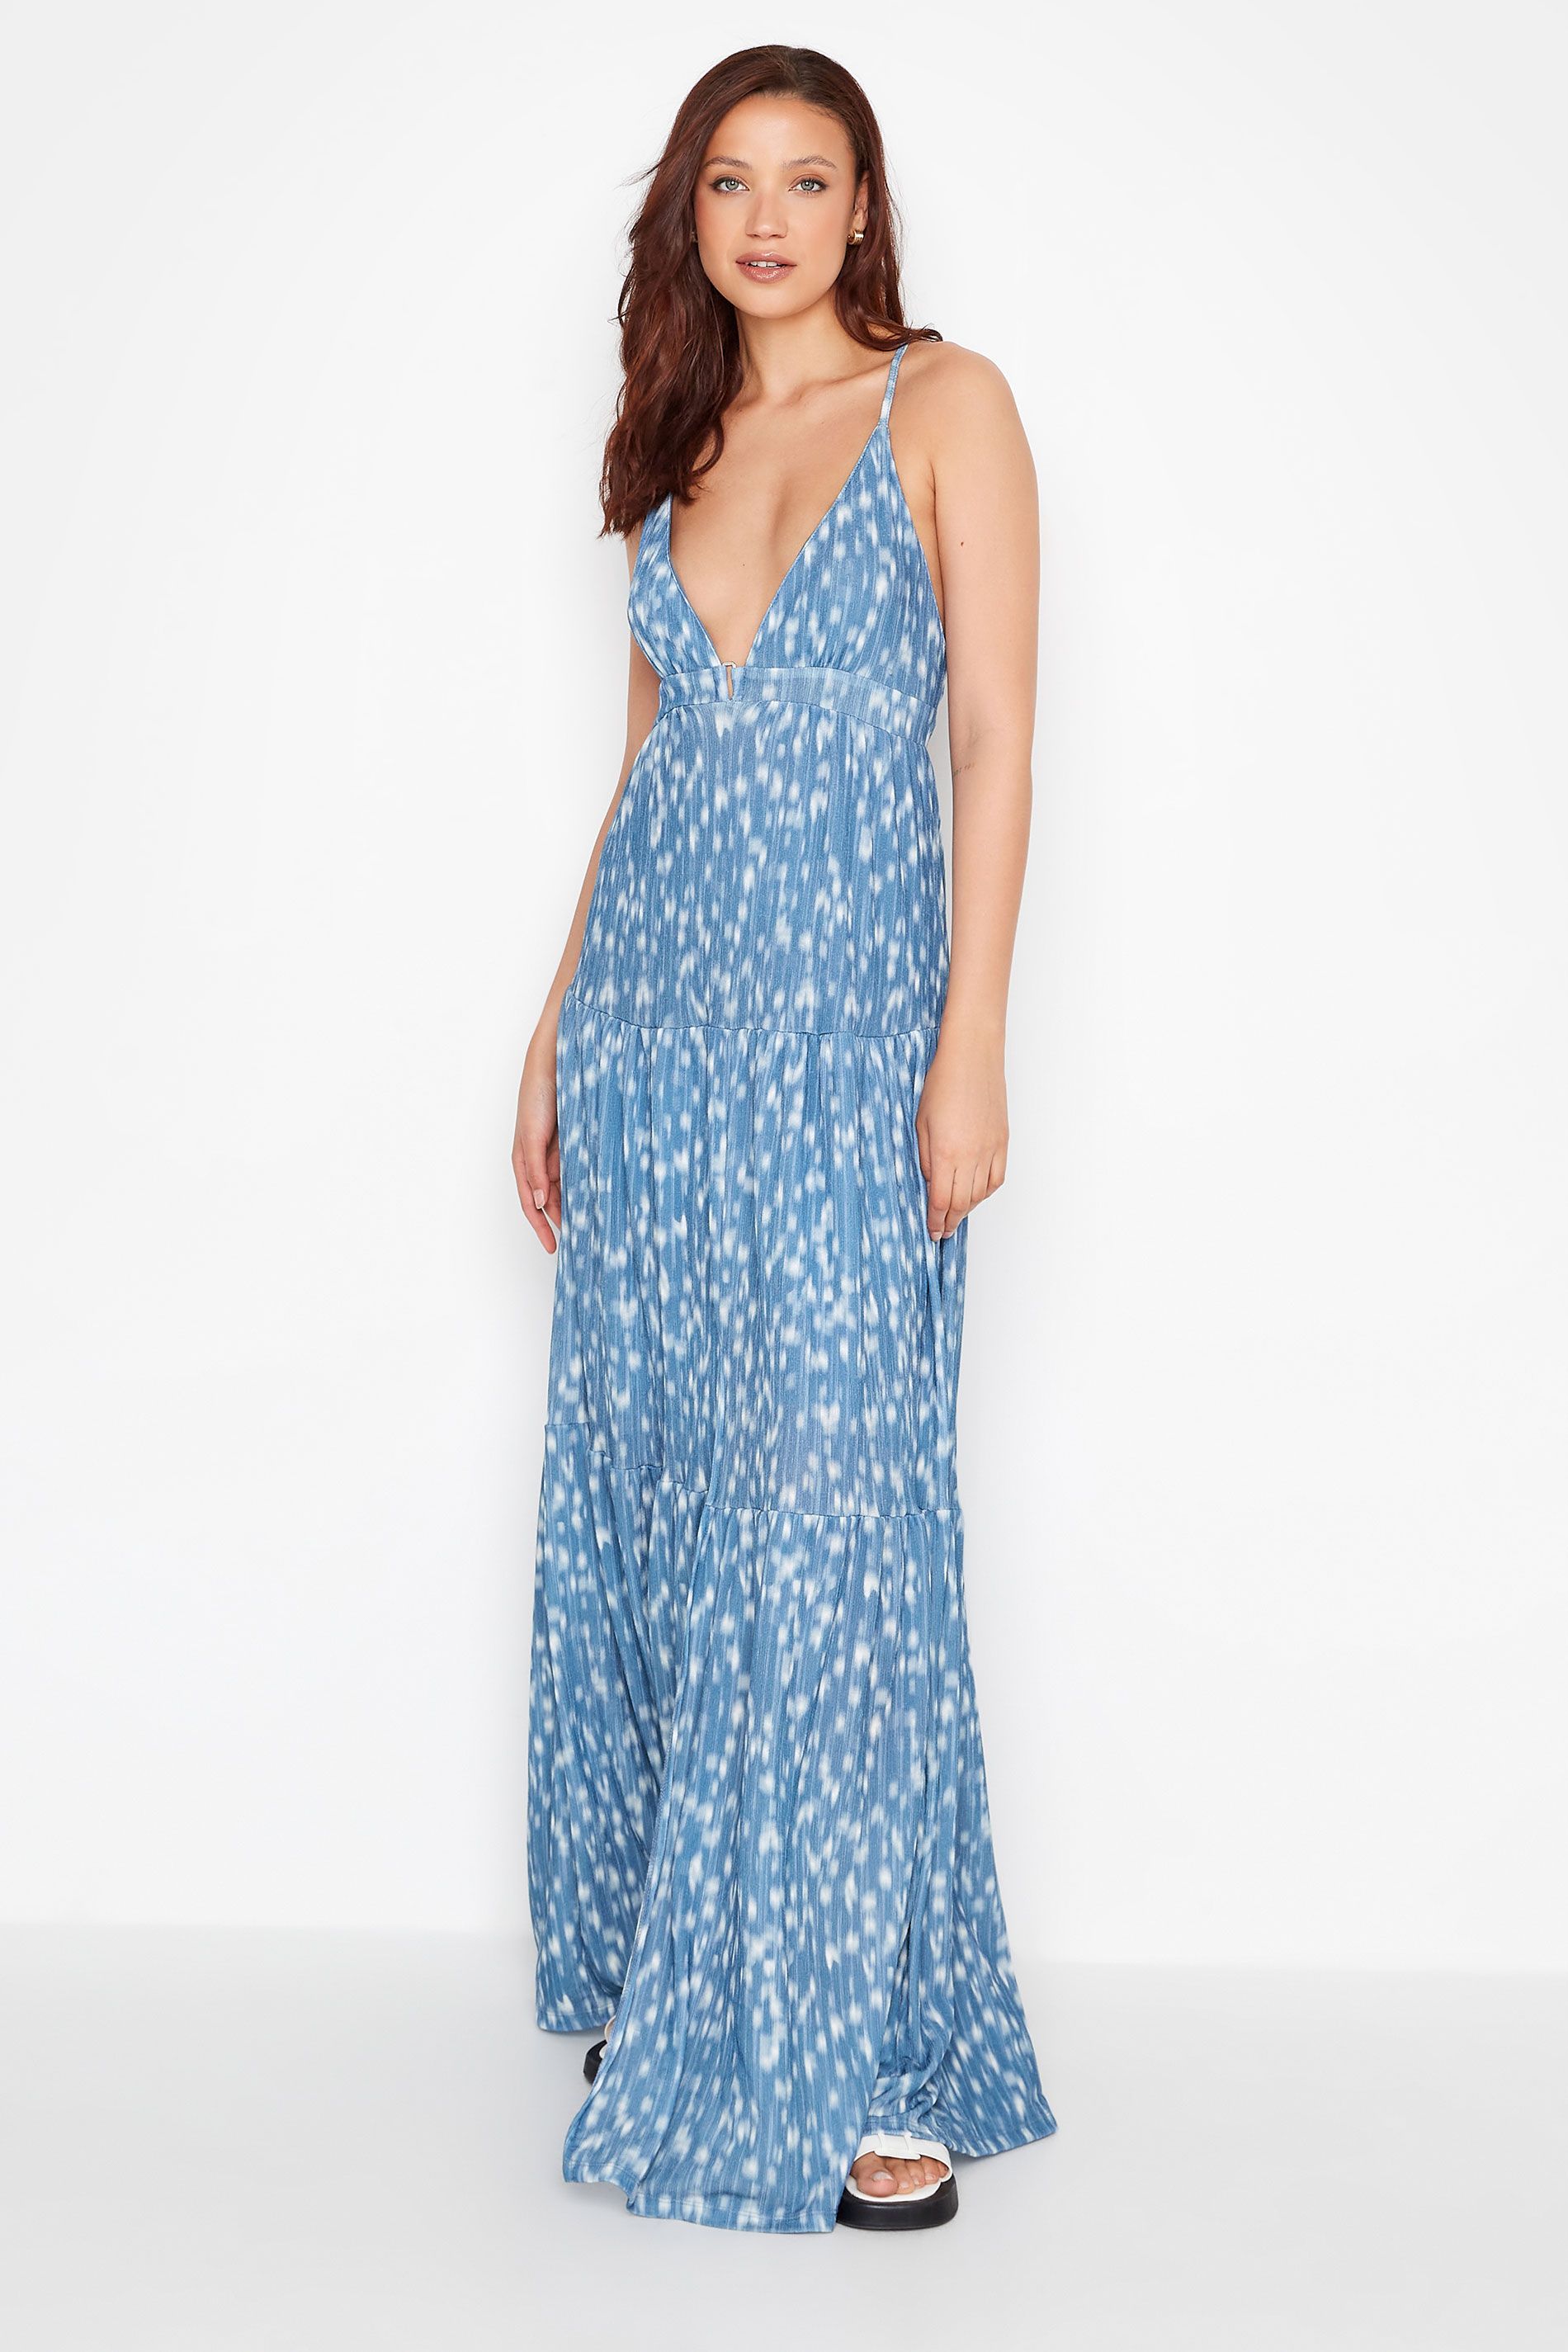 LTS Tall Blue Spot Print Cross Back Tiered Maxi Dress | Long Tall Sally